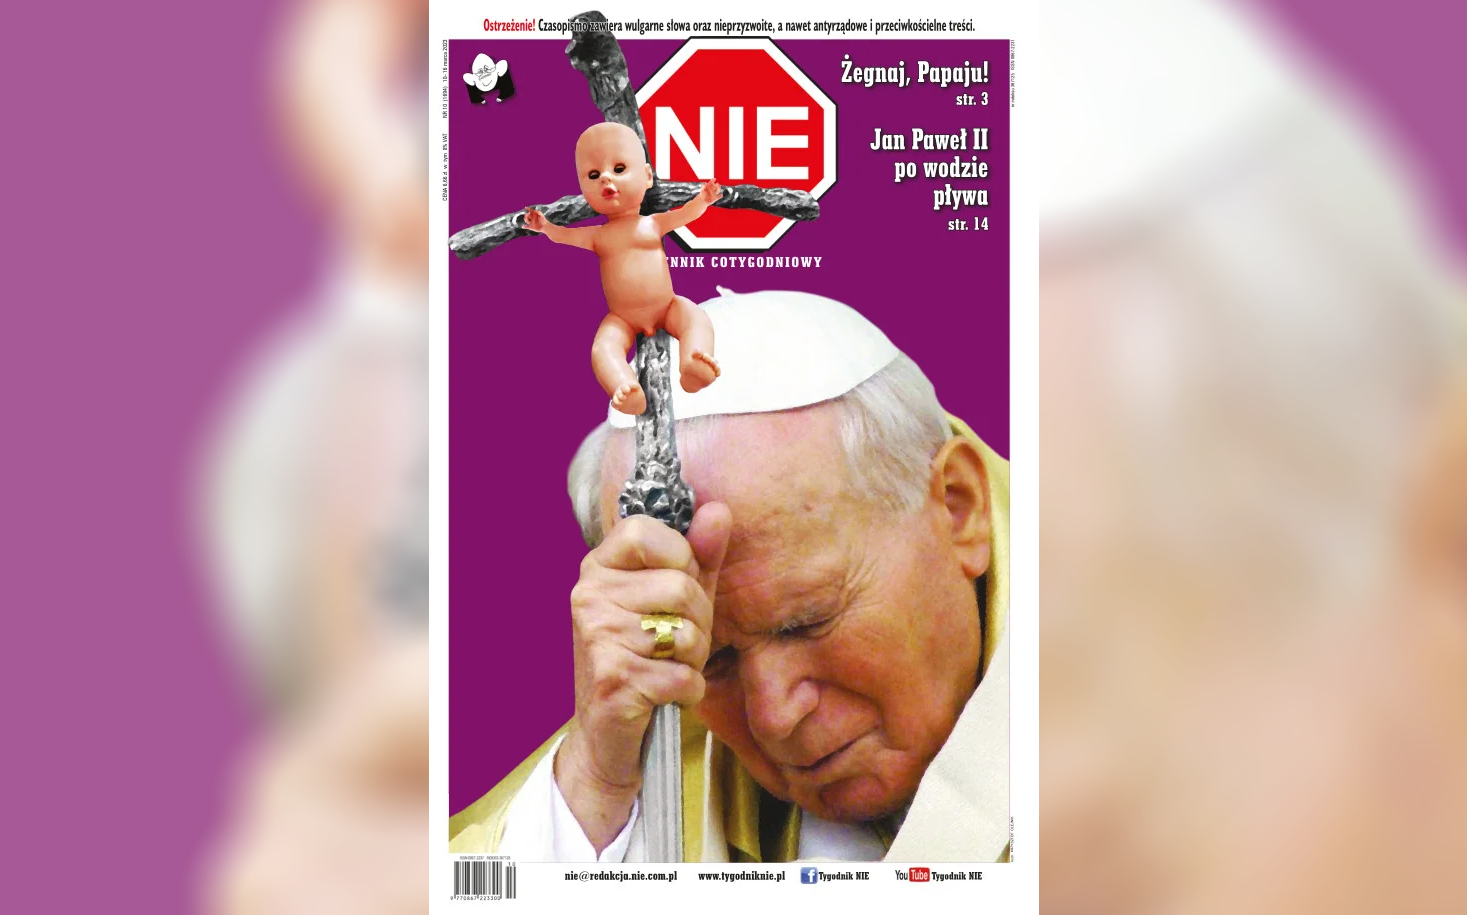 Πολωνία: Απέσυραν σατιρική εφημερίδα με πρωτοσέλιδο τον Ιωάννη Παύλο Β’ να κρατά σταυρό με… μια κούκλα μωρό